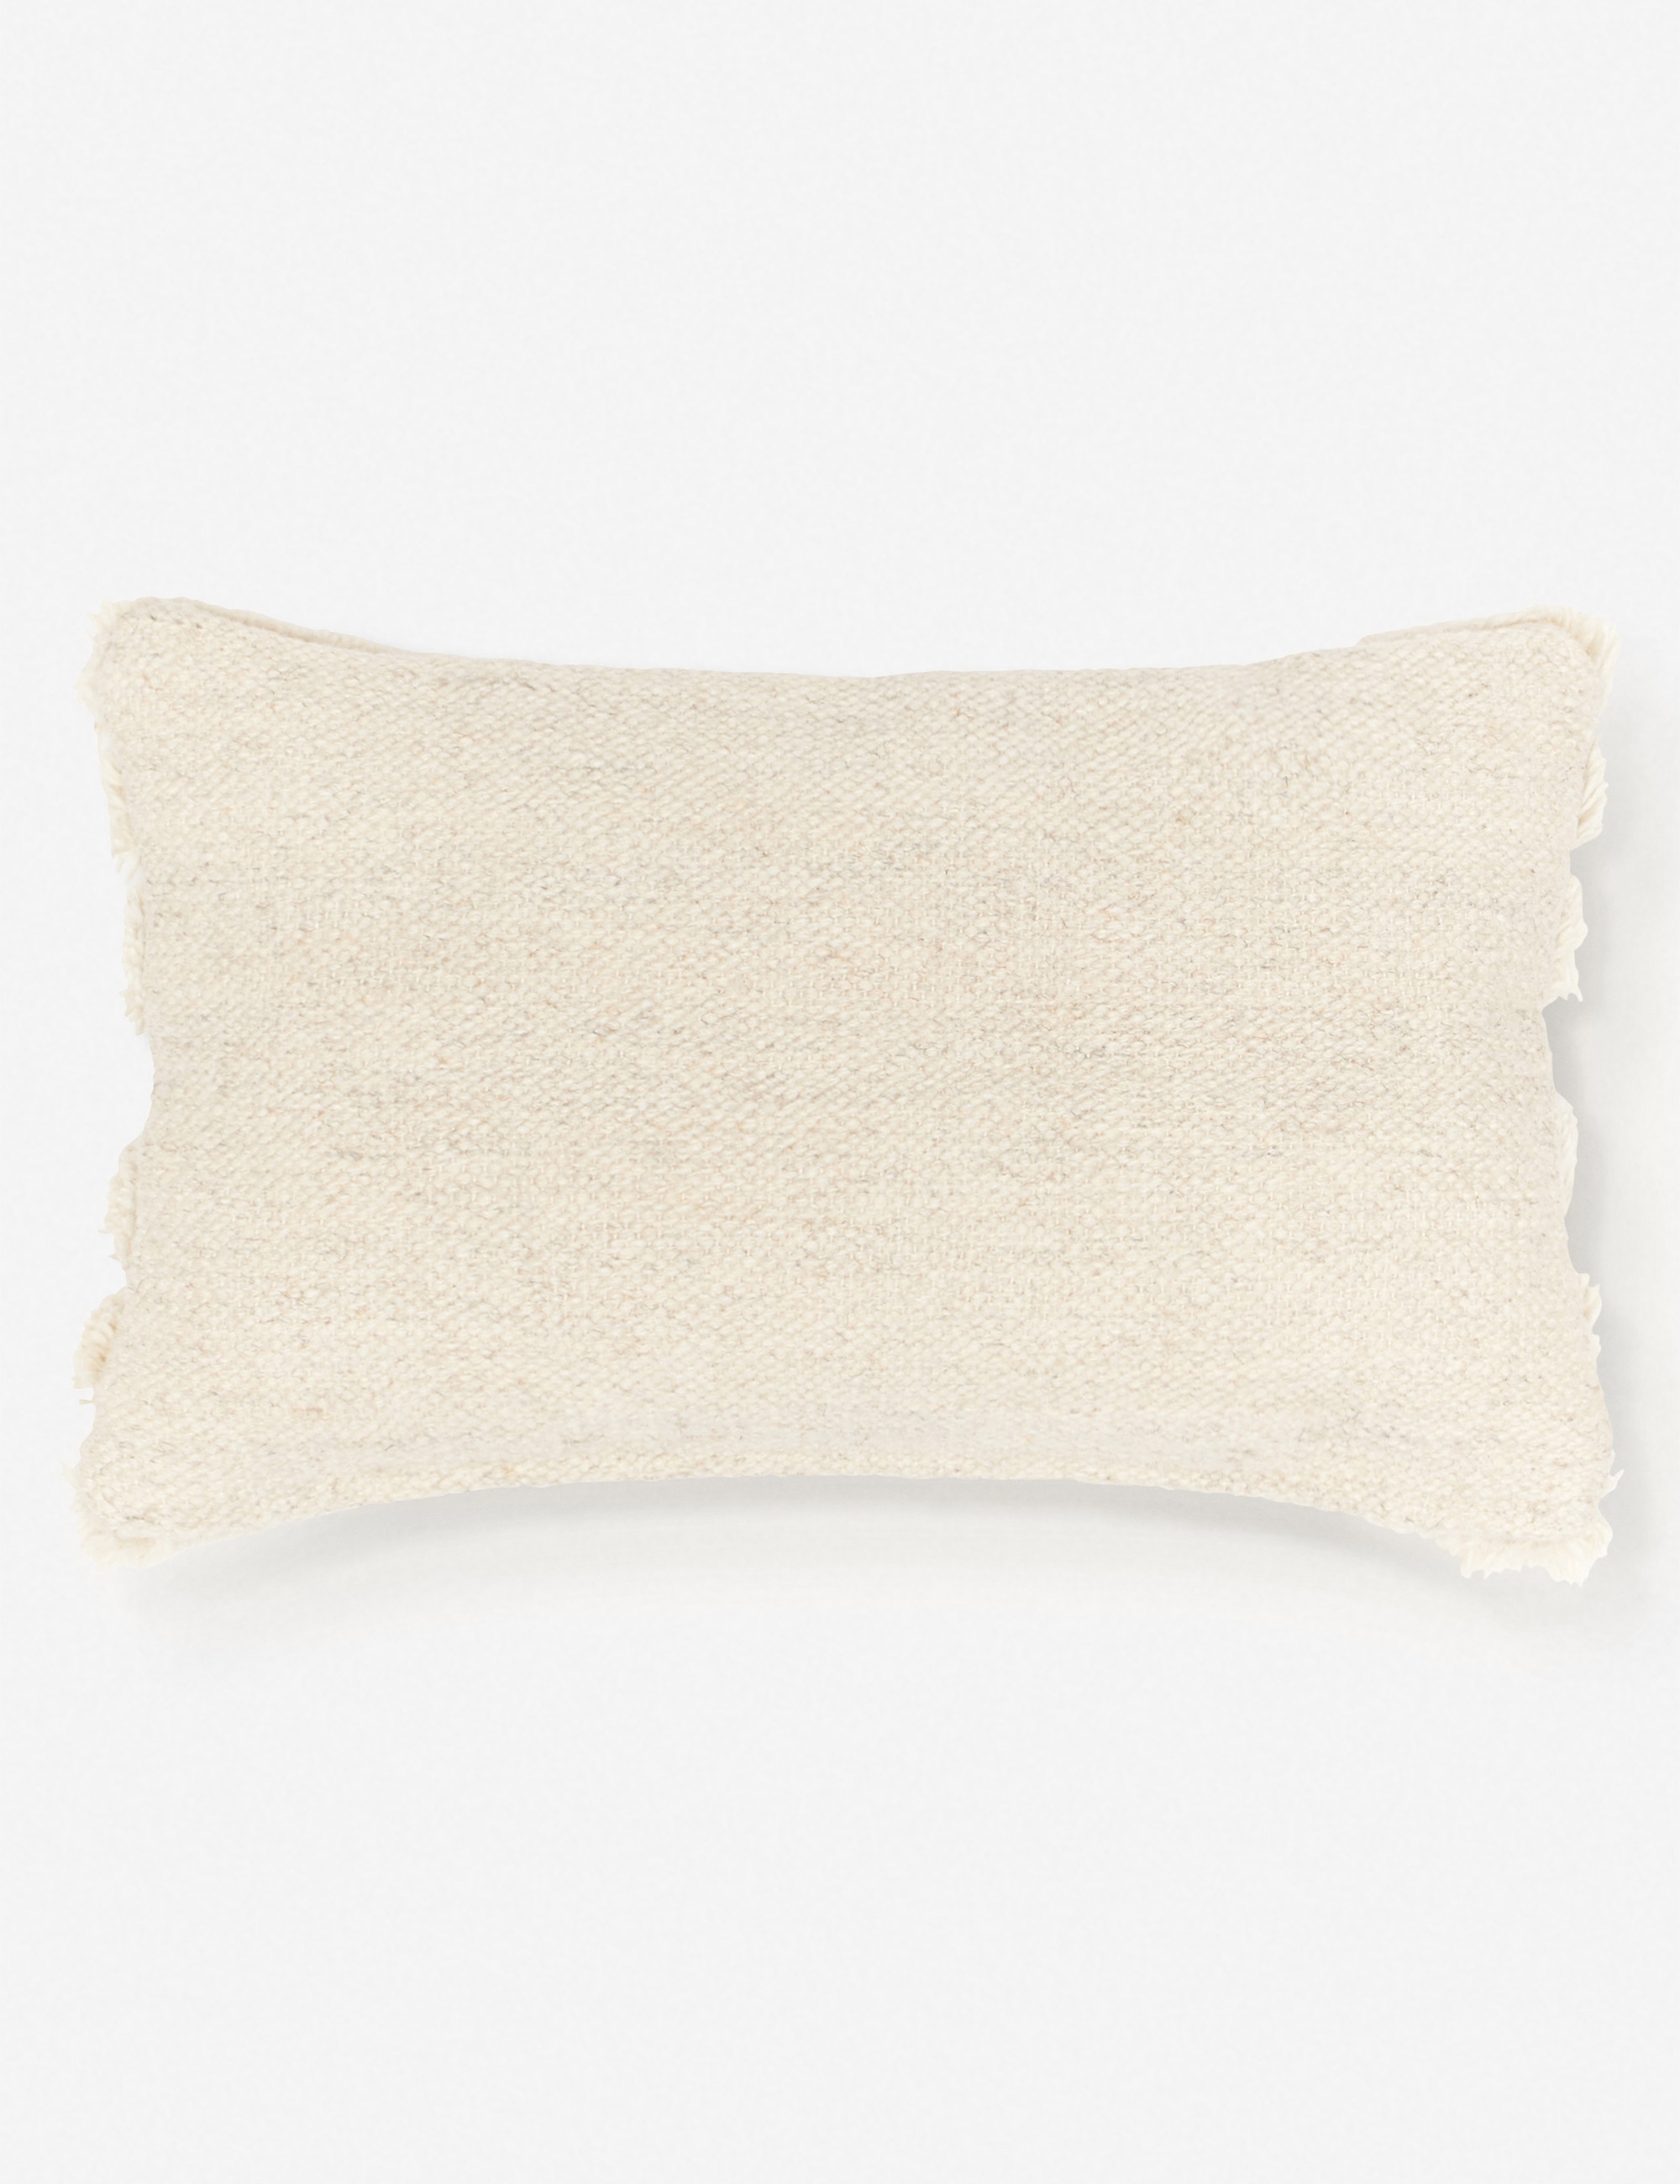 Arches Lumbar Pillow, Natural By Sarah Sherman Samuel - Image 6